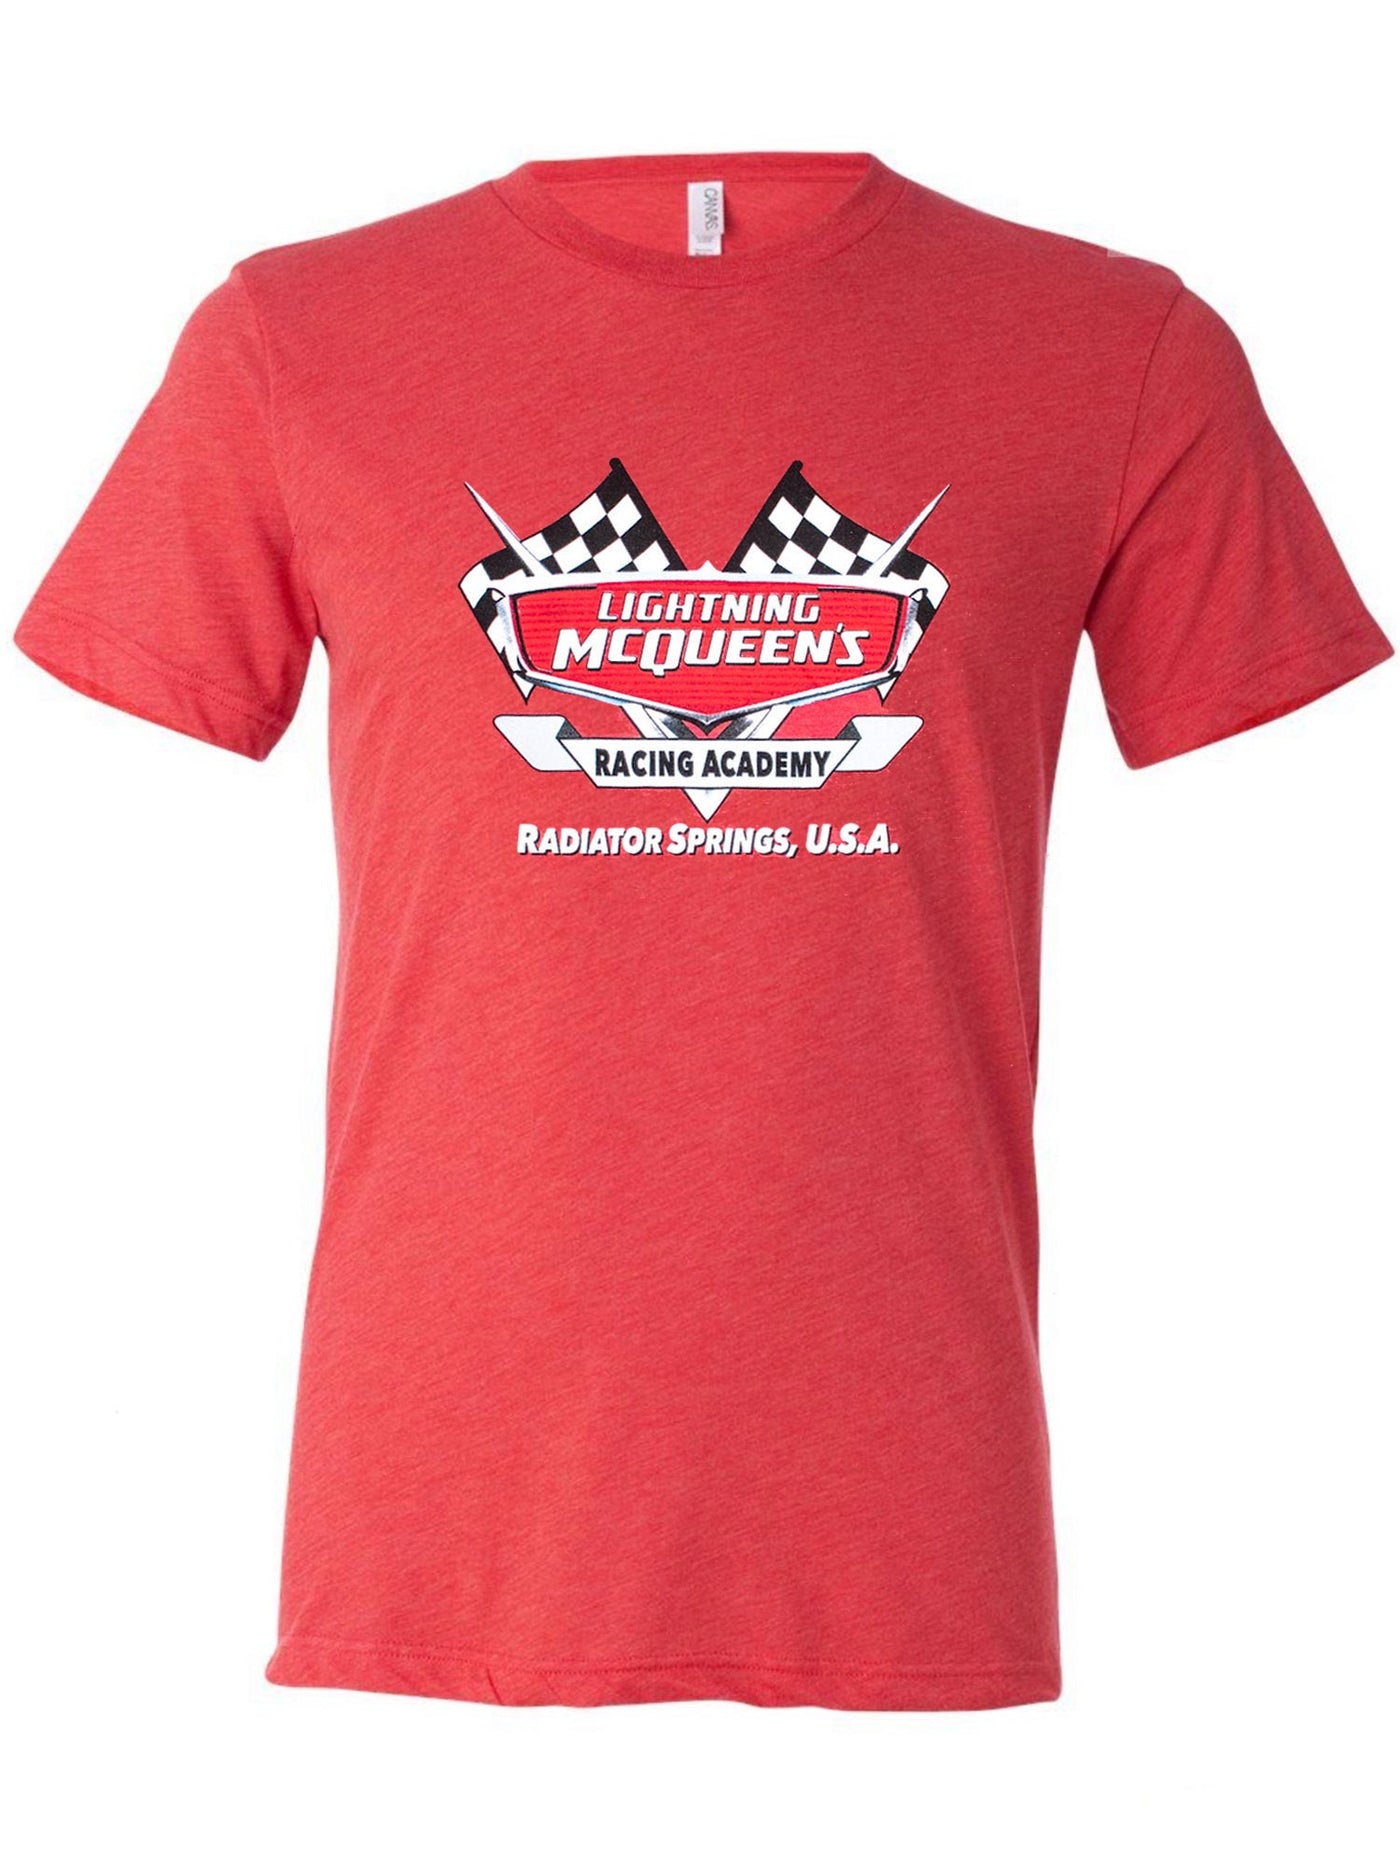 McQueen's Racing Academy Shirt